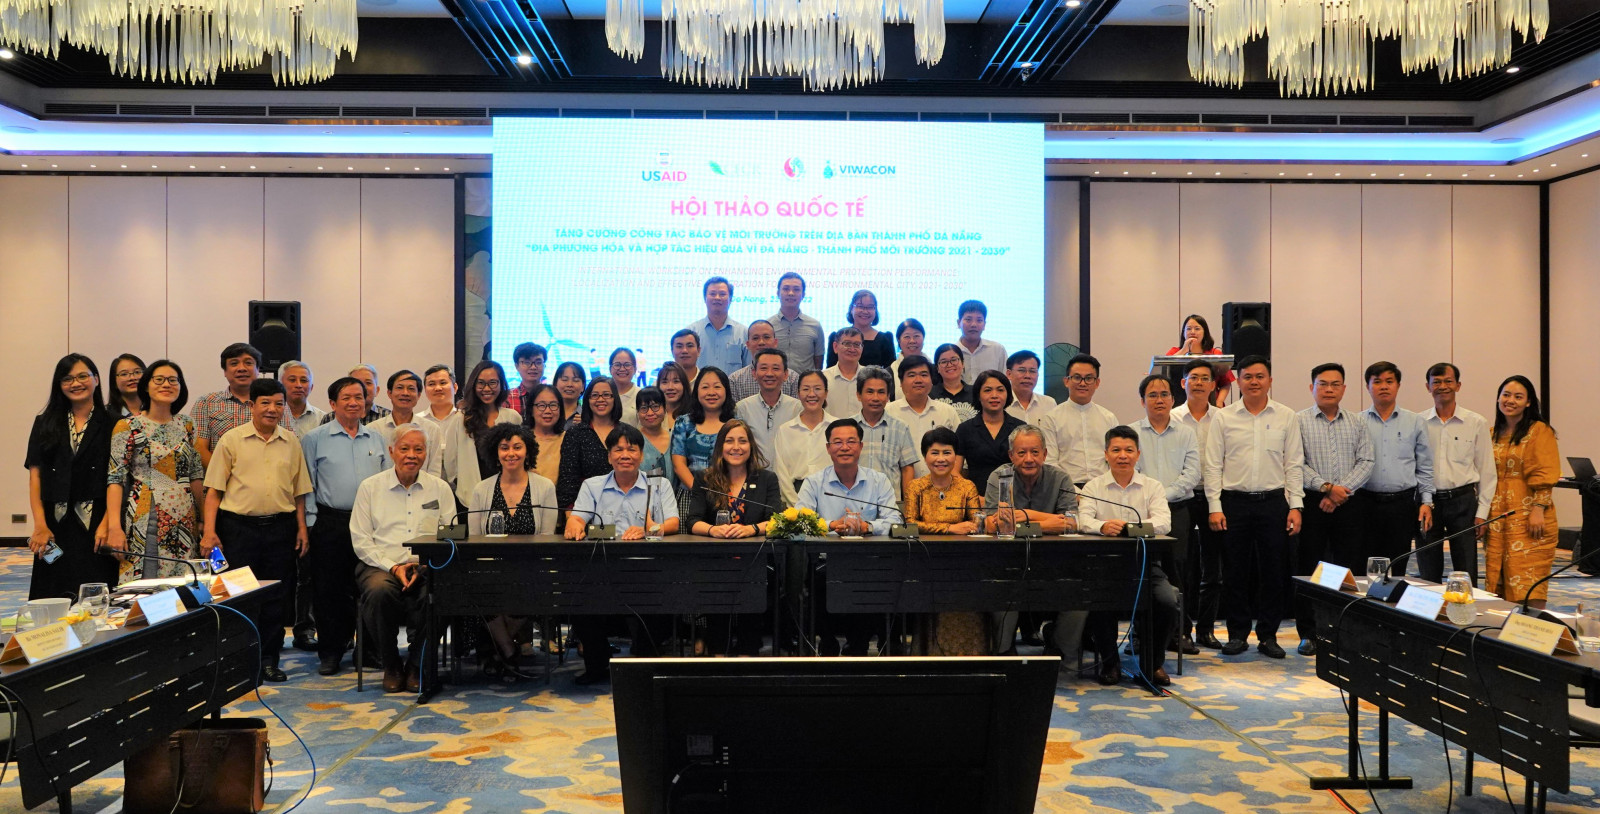 Sở TN&MT TP. Đà Nẵng đã phối hợp CECR tổ chức hội thảo quốc tế “Địa phương hóa và hợp tác hiệu quả, vì Đà Nẵng – Thành phố môi trường”